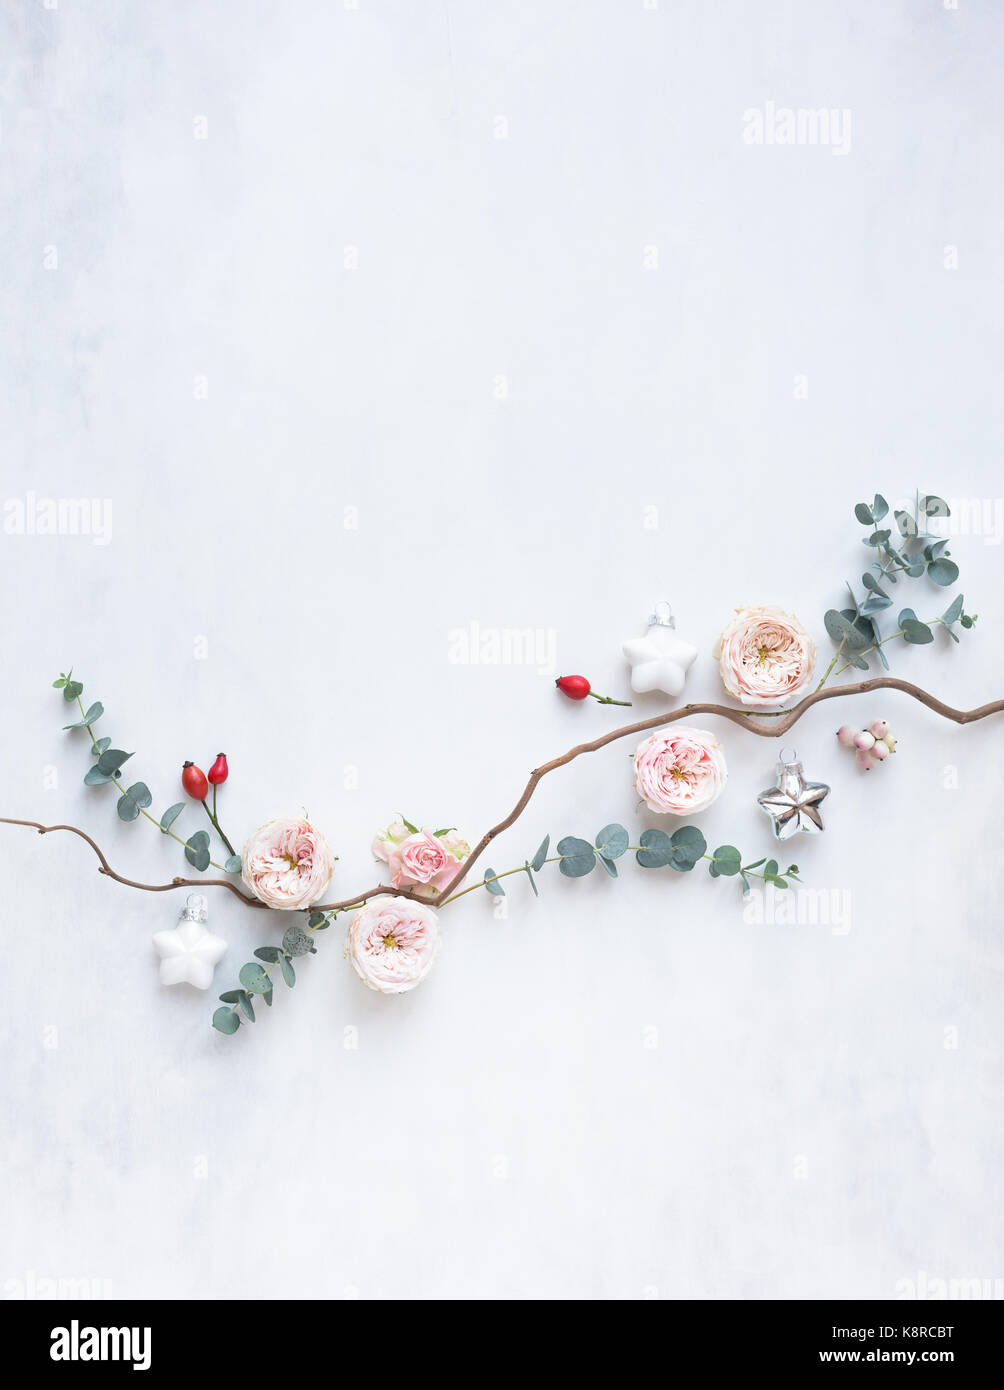 Todavía la vida festivo arreglo de Navidad con flores, eucaliptos, caderas rosas y decoraciones, vista desde arriba, luz natural Foto de stock